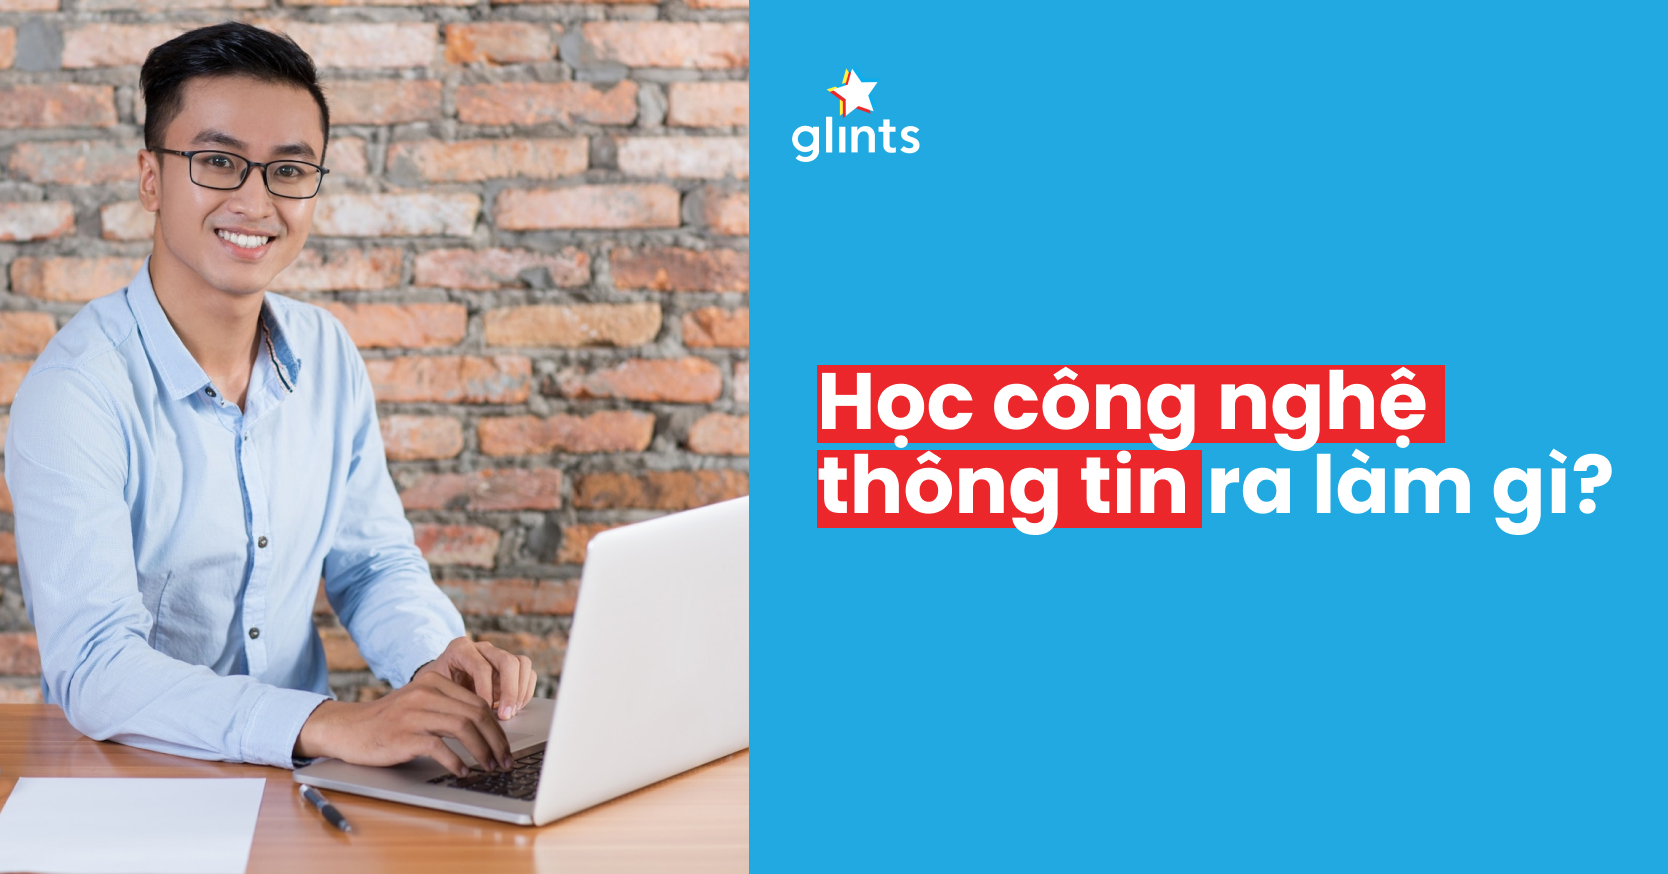 Công nghệ thông tin: Công nghệ thông tin đang phát triển không ngừng nghỉ, giúp con người kết nối với nhau và với thế giới một cách nhanh chóng và thuận tiện. Tại Việt Nam, có rất nhiều câu lạc bộ và trung tâm đào tạo CNTT, giúp các học viên có thể trang bị cho mình kiến thức và kỹ năng cần thiết trong lĩnh vực này và nâng cao khả năng cạnh tranh trên thị trường lao động.